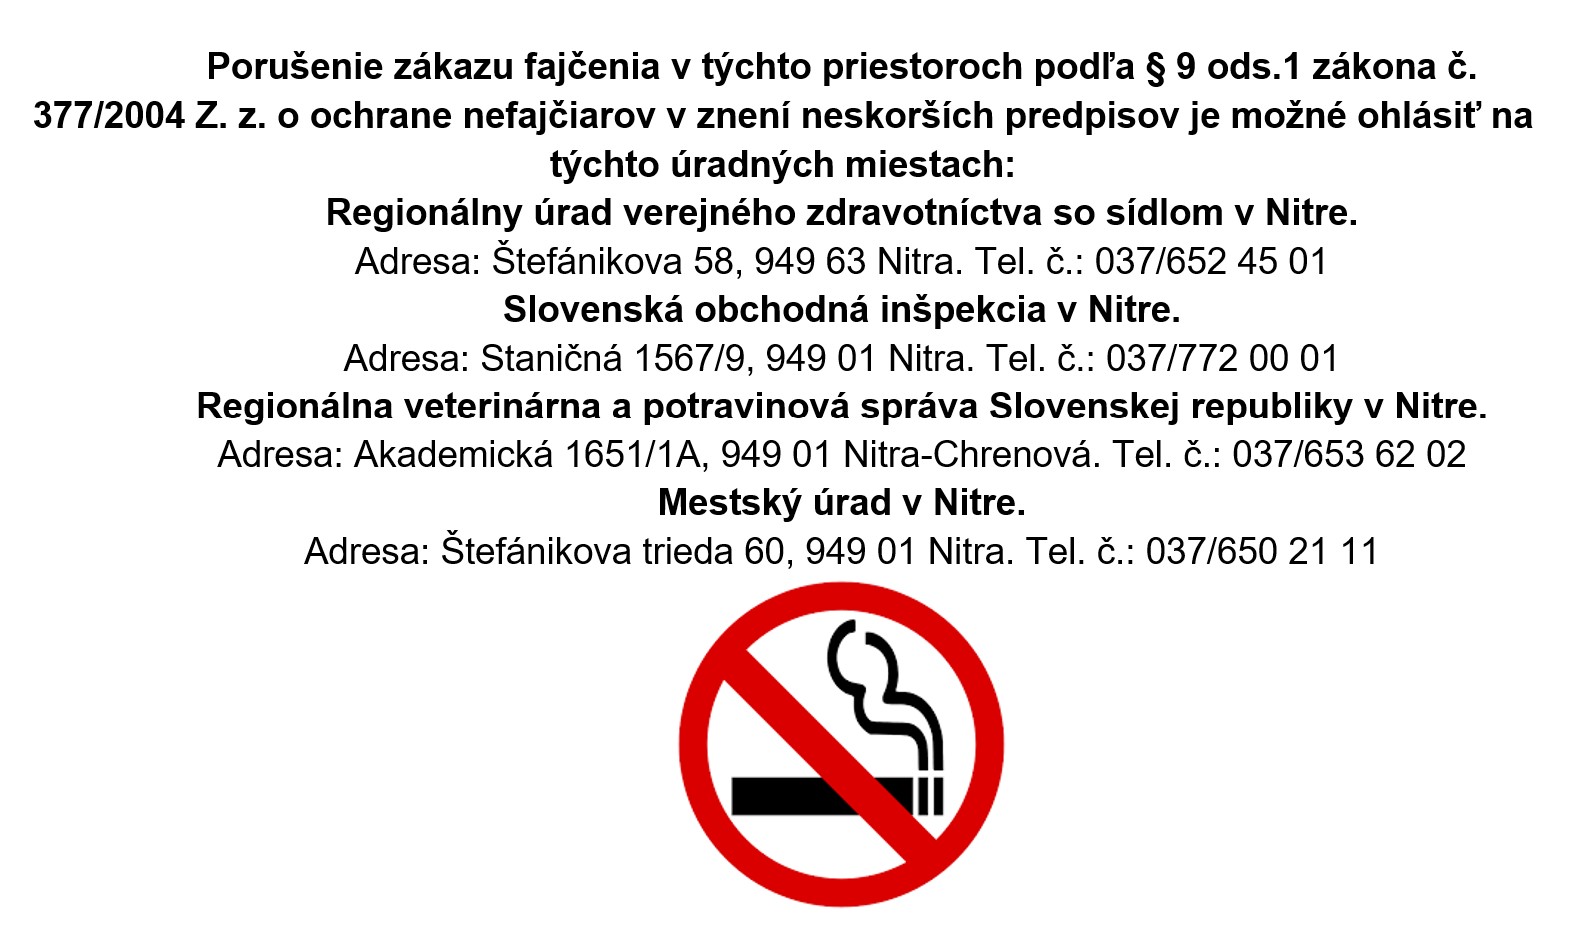 Zákony o fajčení na slovensku